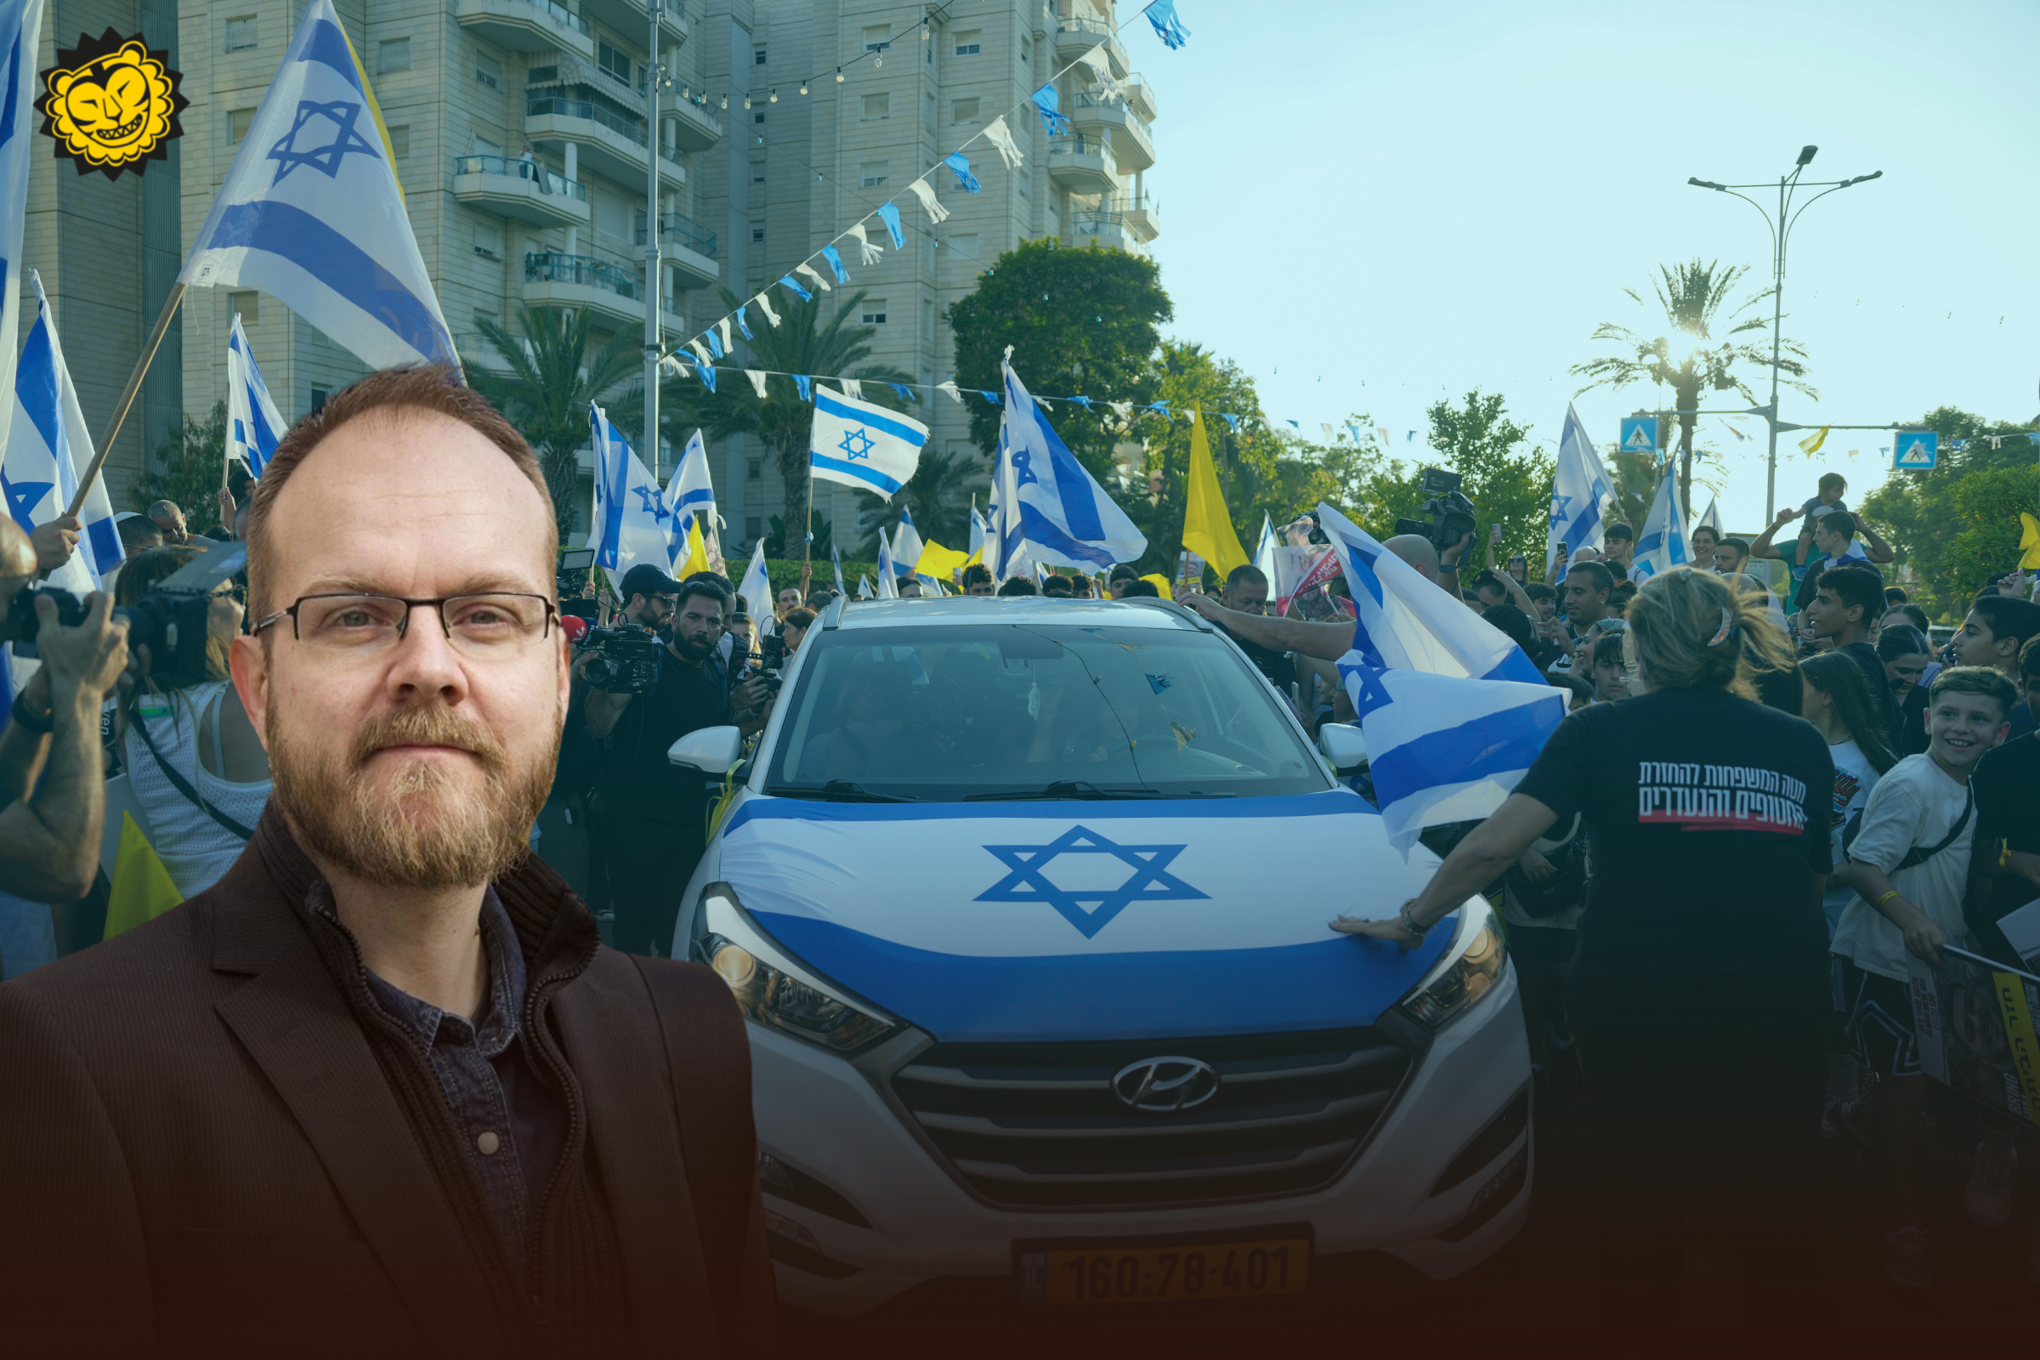 Bakgrund: Israeliska flaggor och polisbild. Förgrund: Per-Anders Svärd